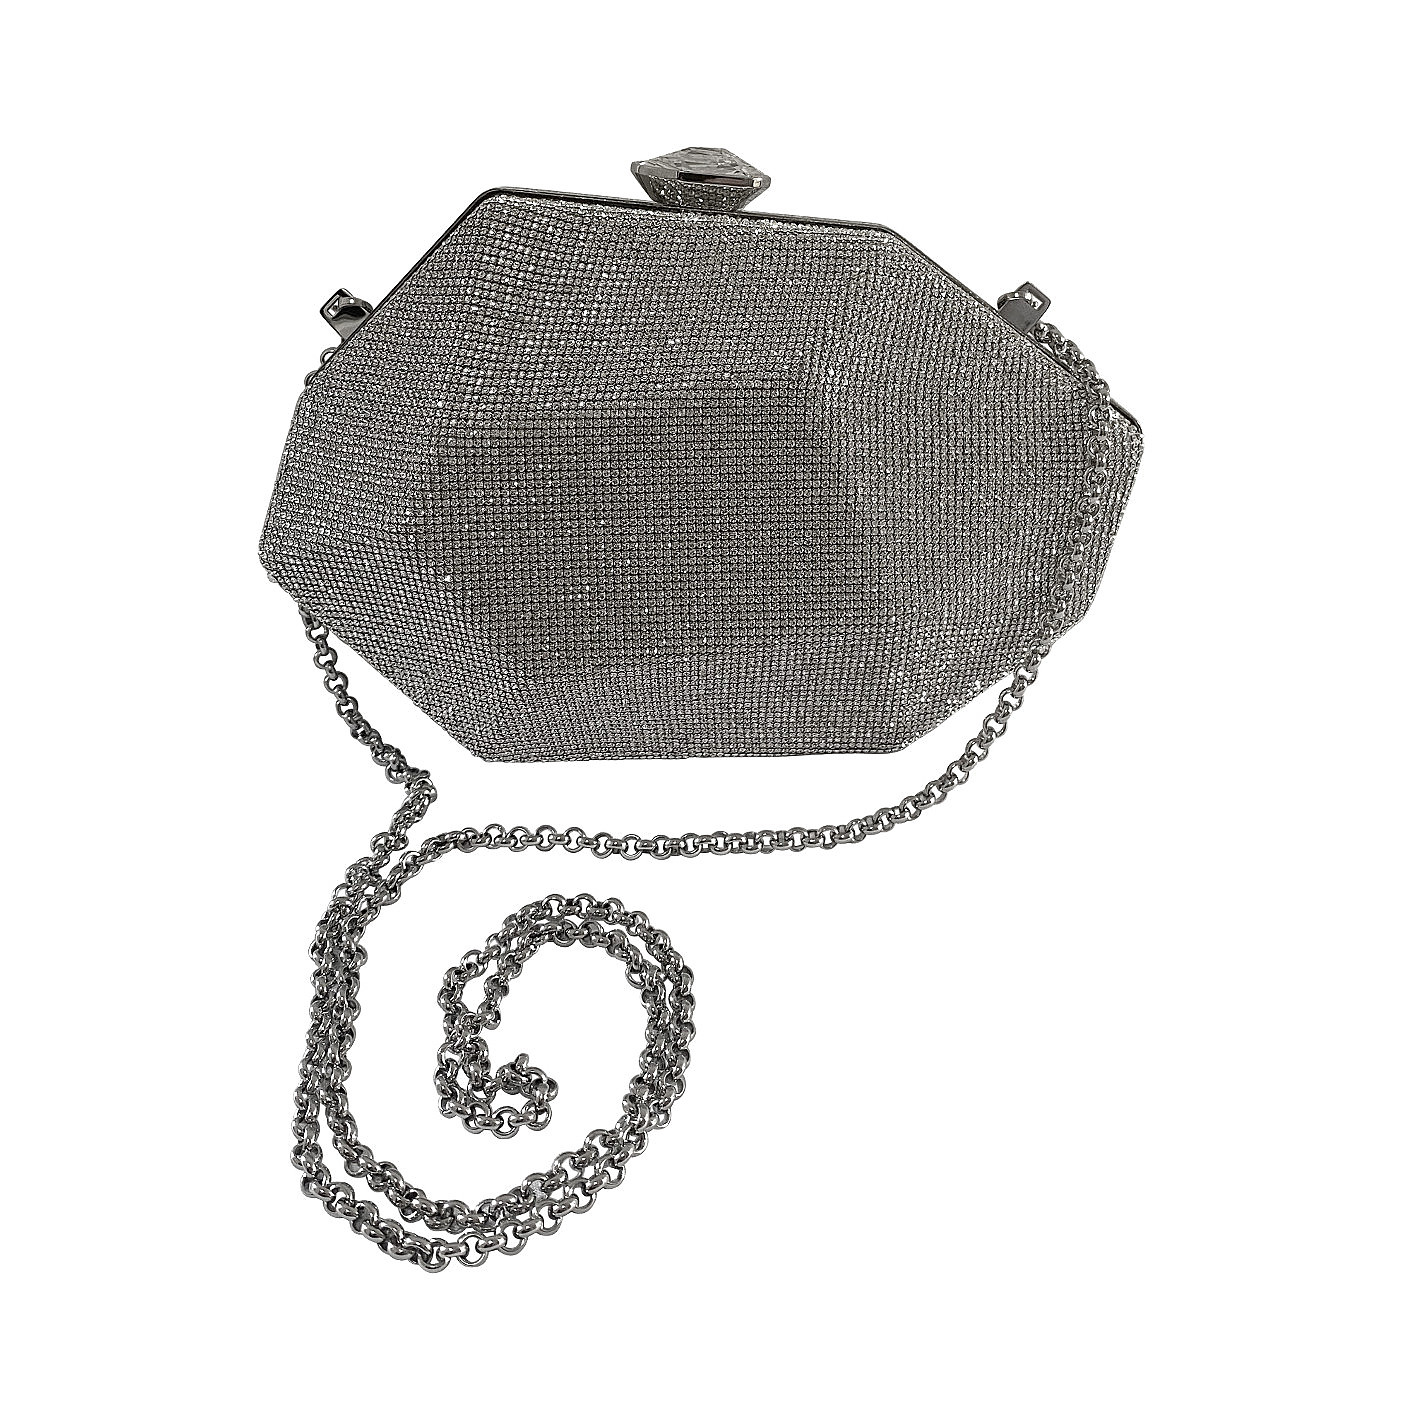 Atelier Swarovski Crystal geometric clutch with chain silver